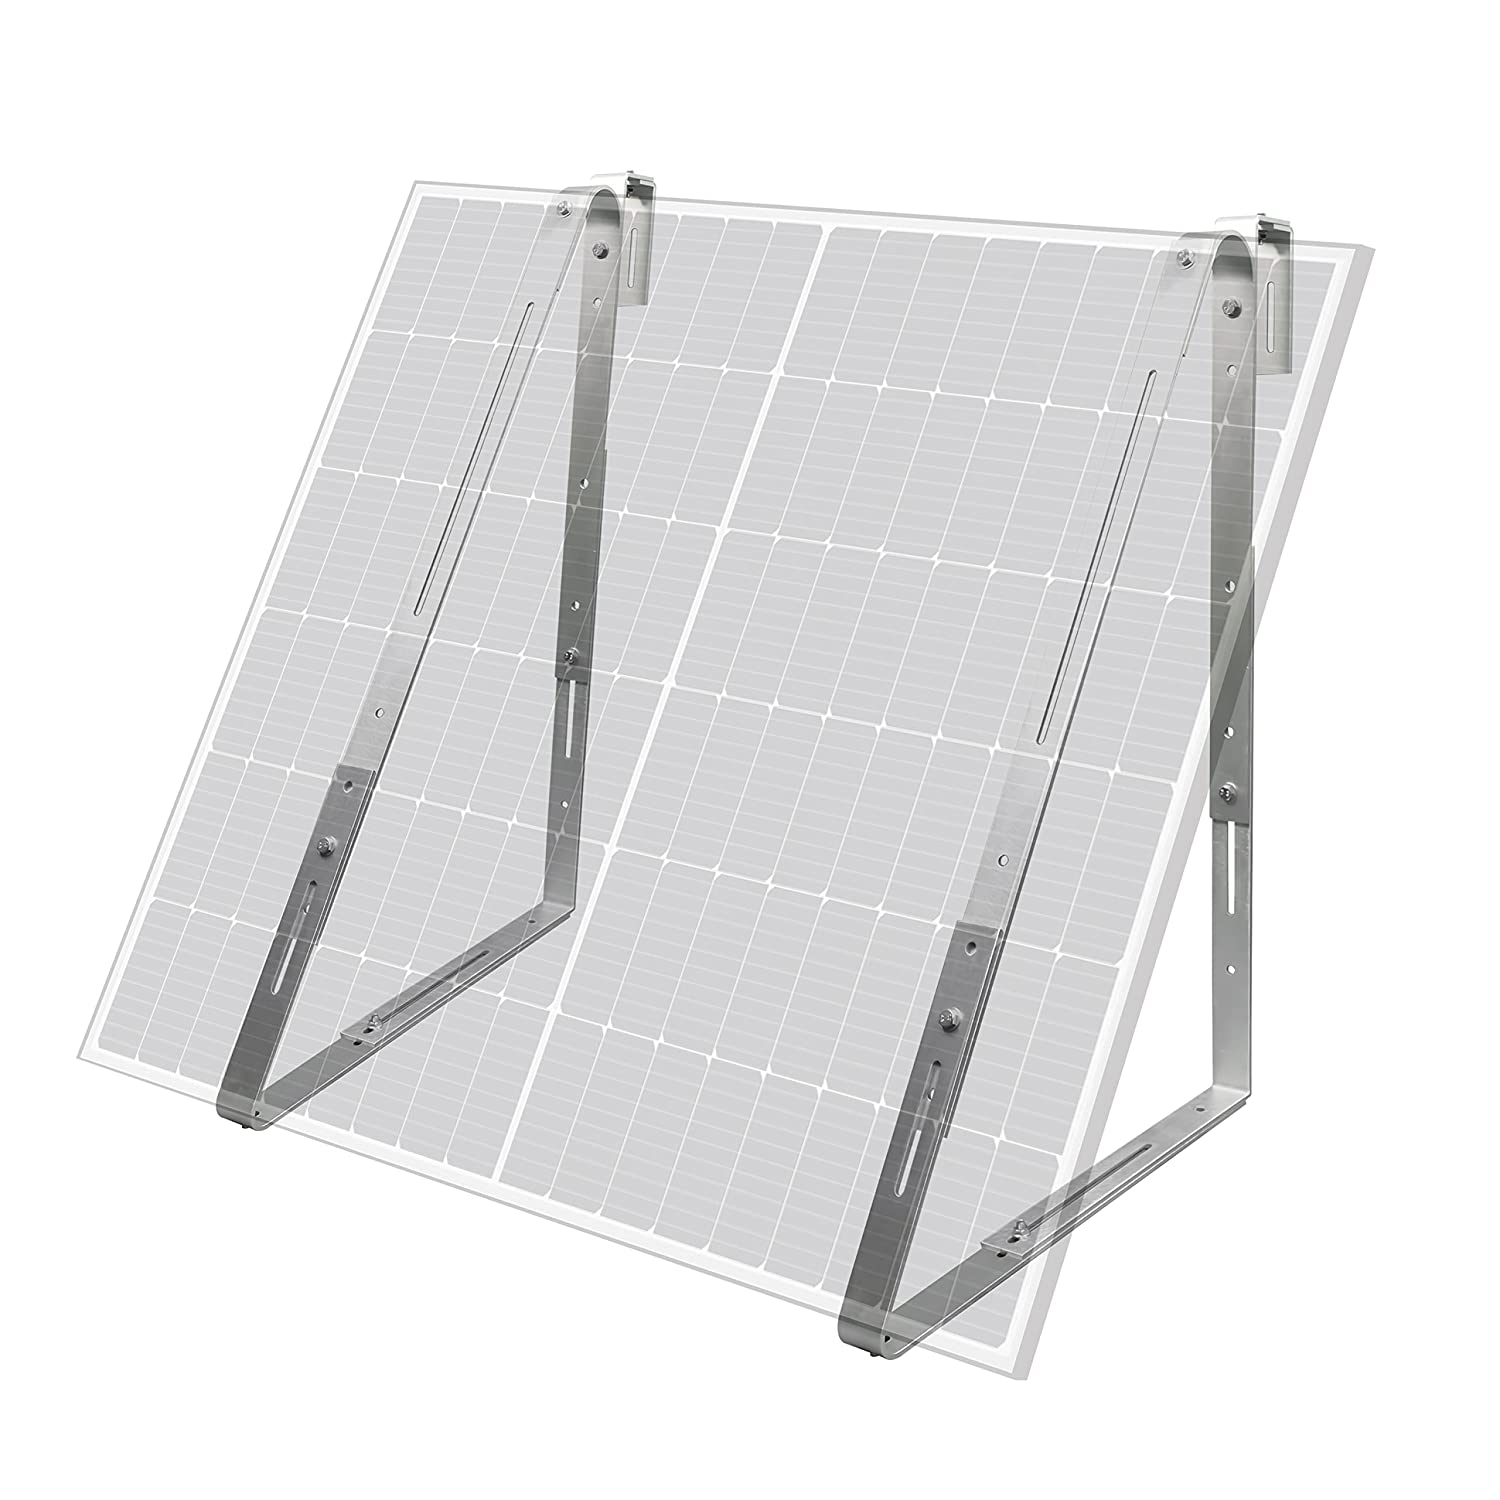 92-120 cm Halterung LEICKE Balkon solar-Halterung, Solarpanel Aluminium Halter für Solarmodulbreiten von alle